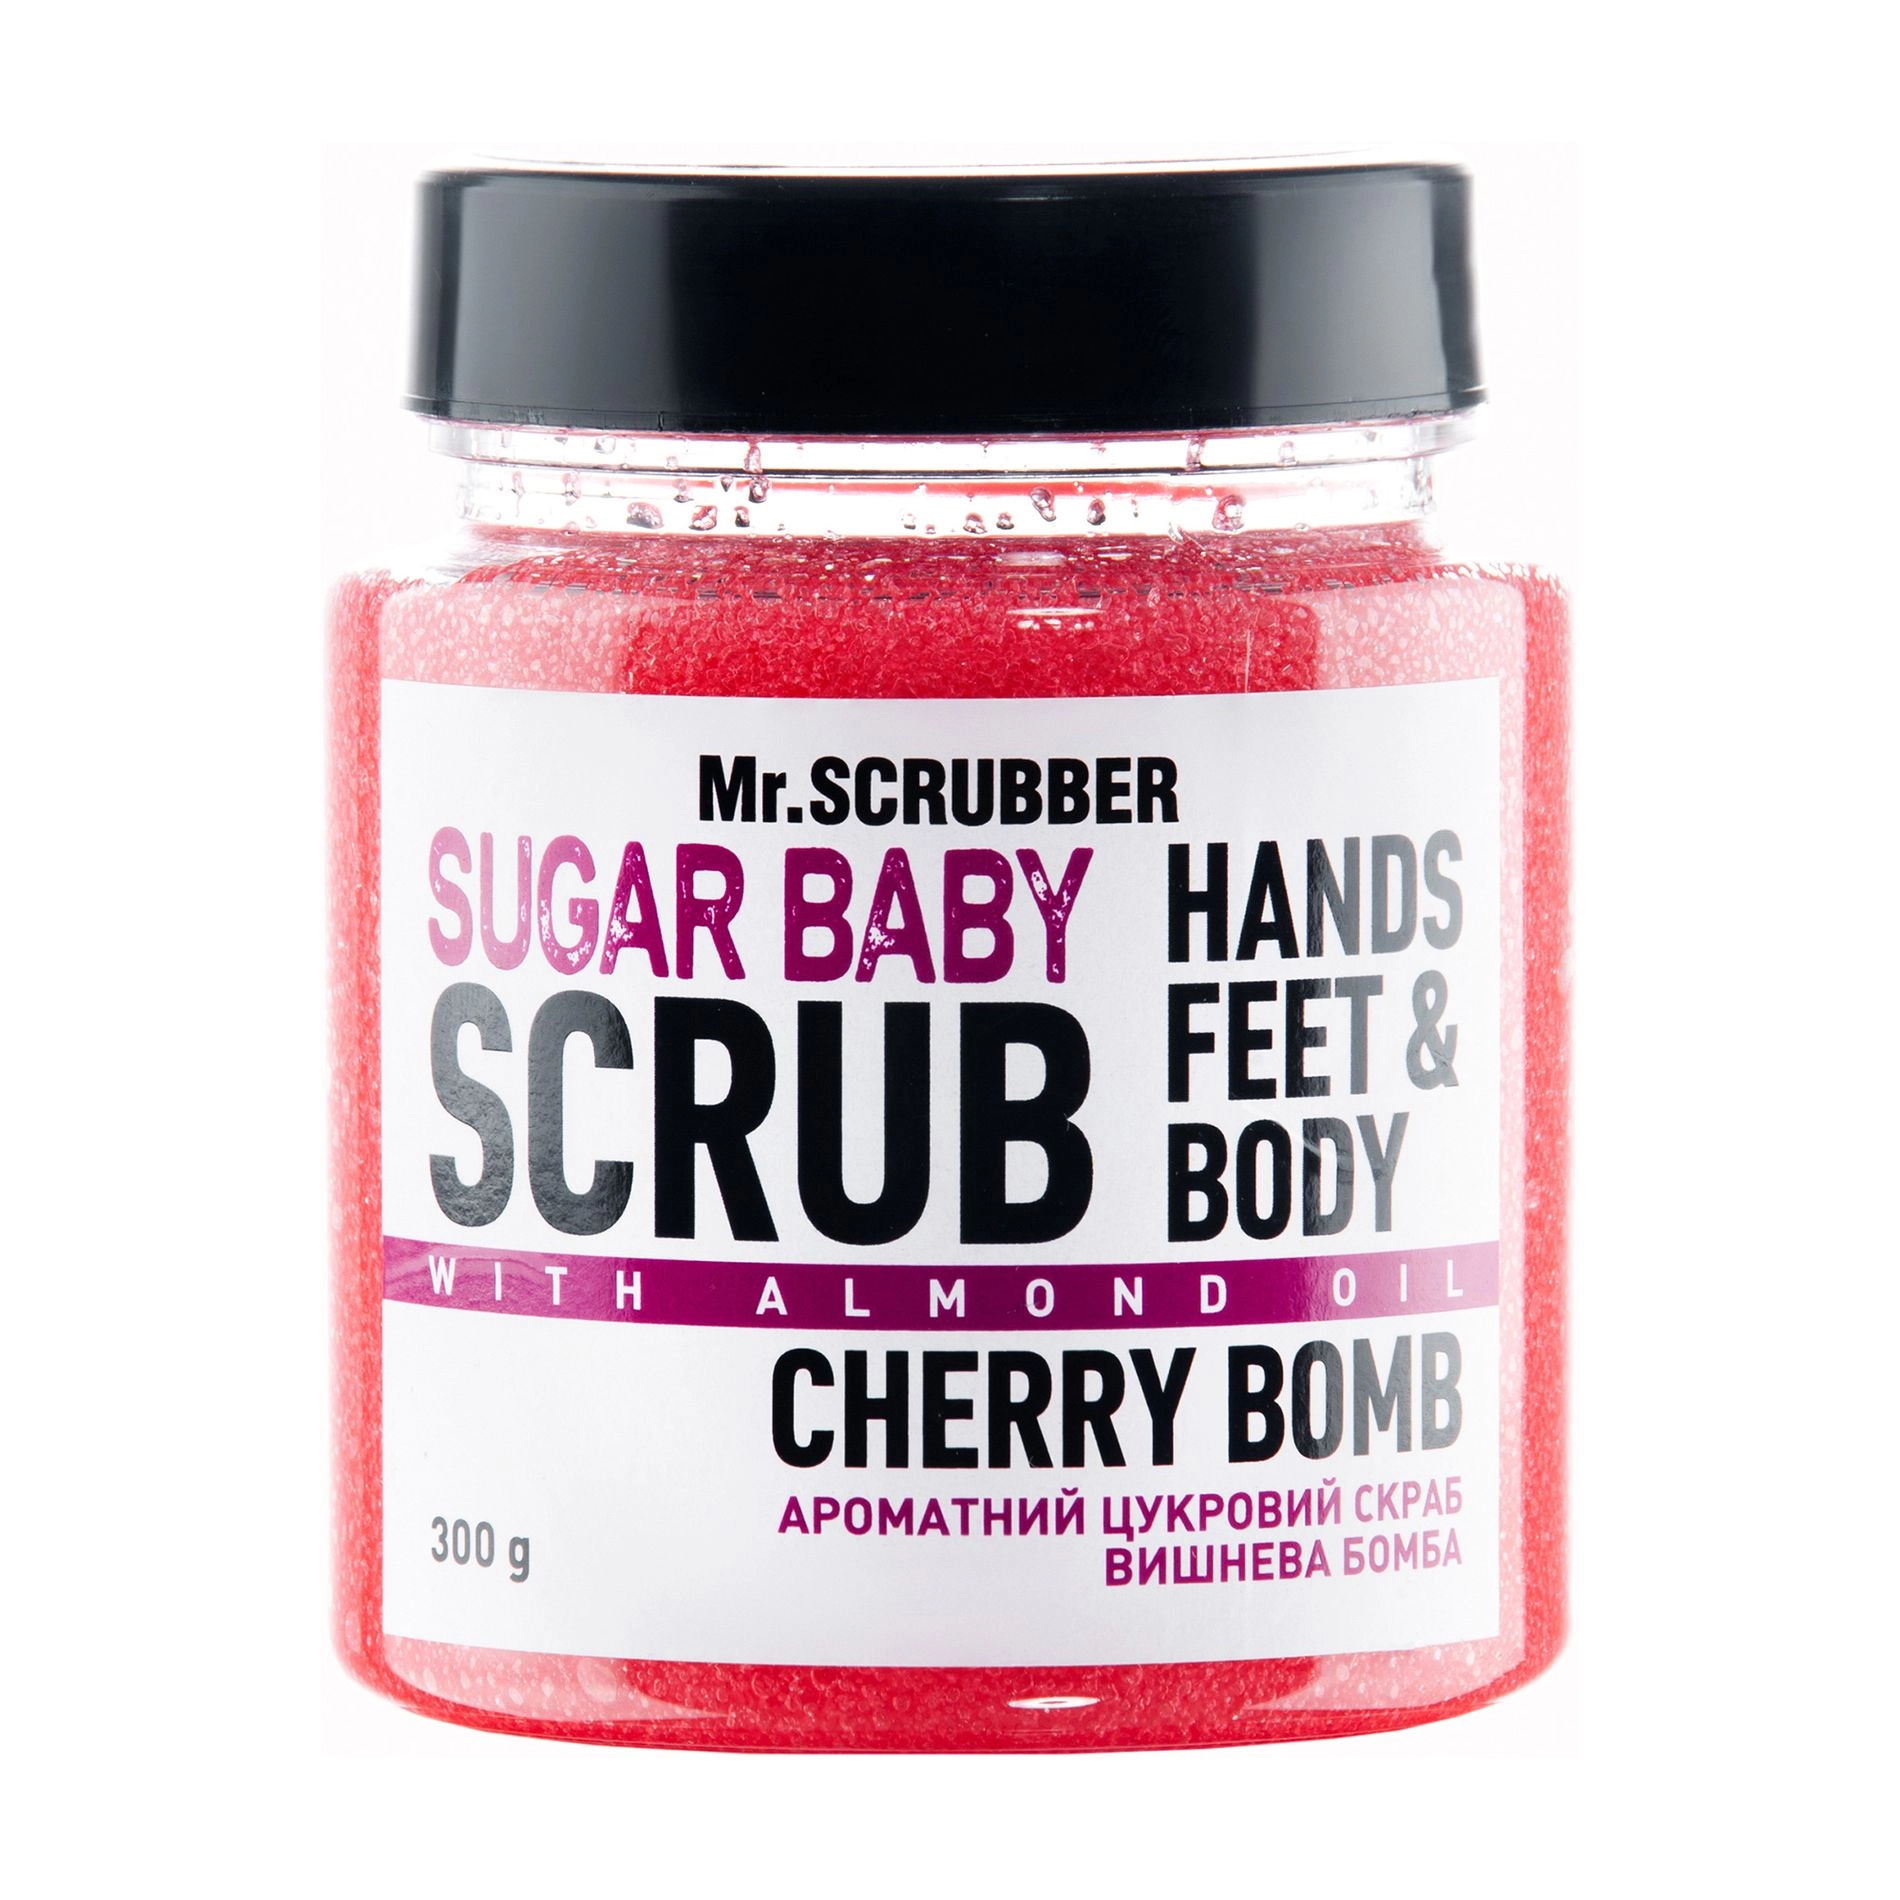 Mr.Scrubber Цукровий скраб для тіла Sugar baby Cherry Bomb для всіх типів шкіри, 300 г - фото N1